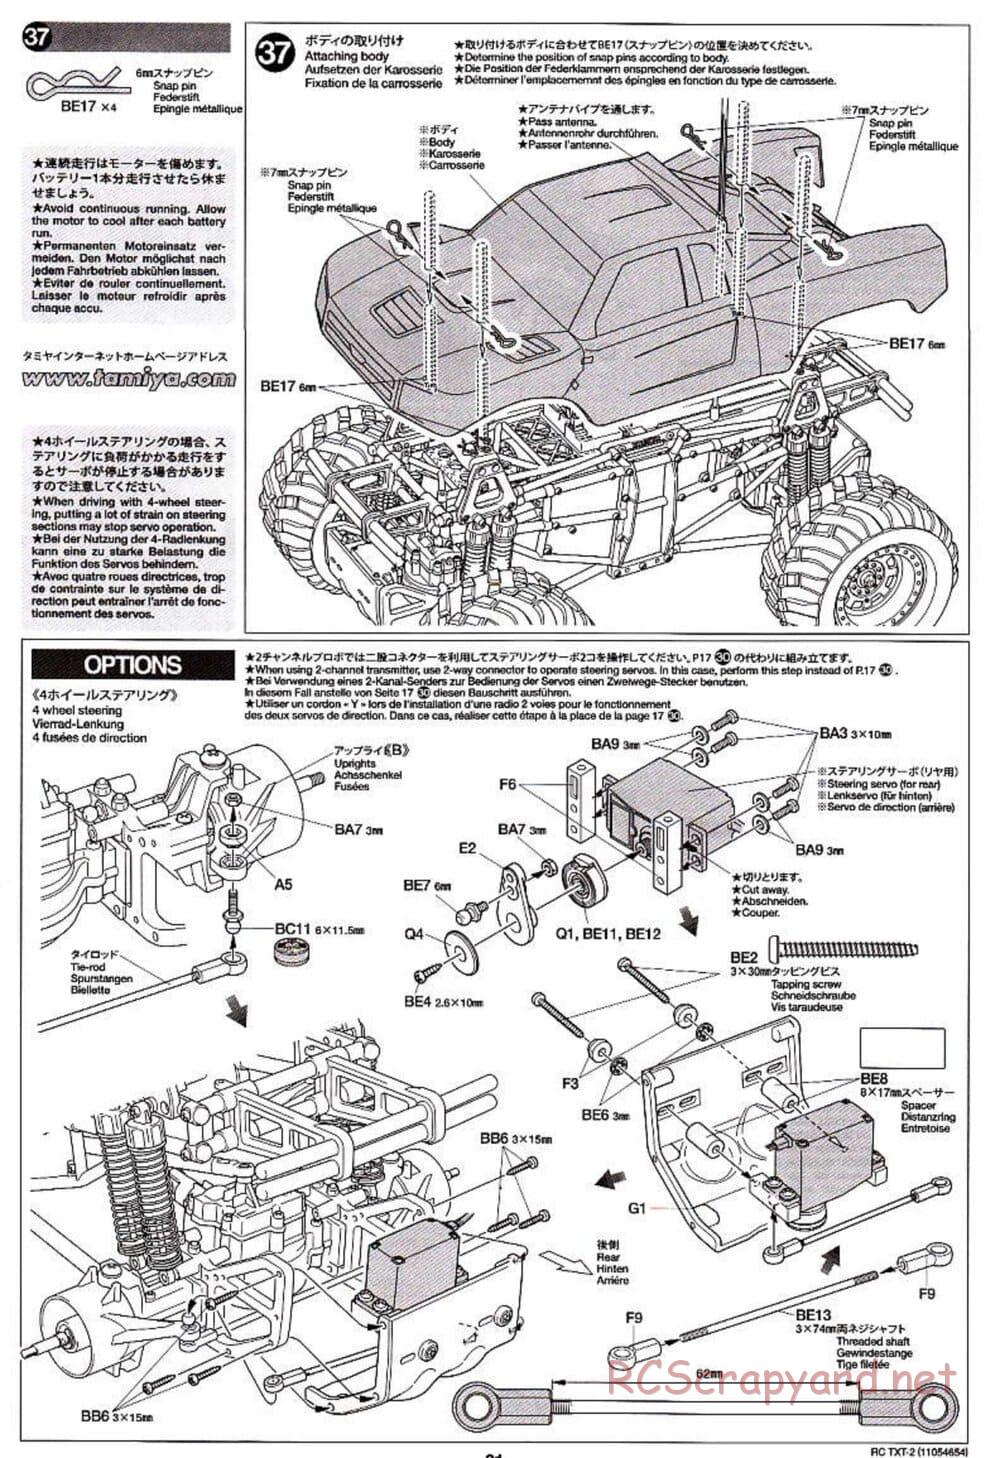 Tamiya - TXT-2 Chassis - Manual - Page 21